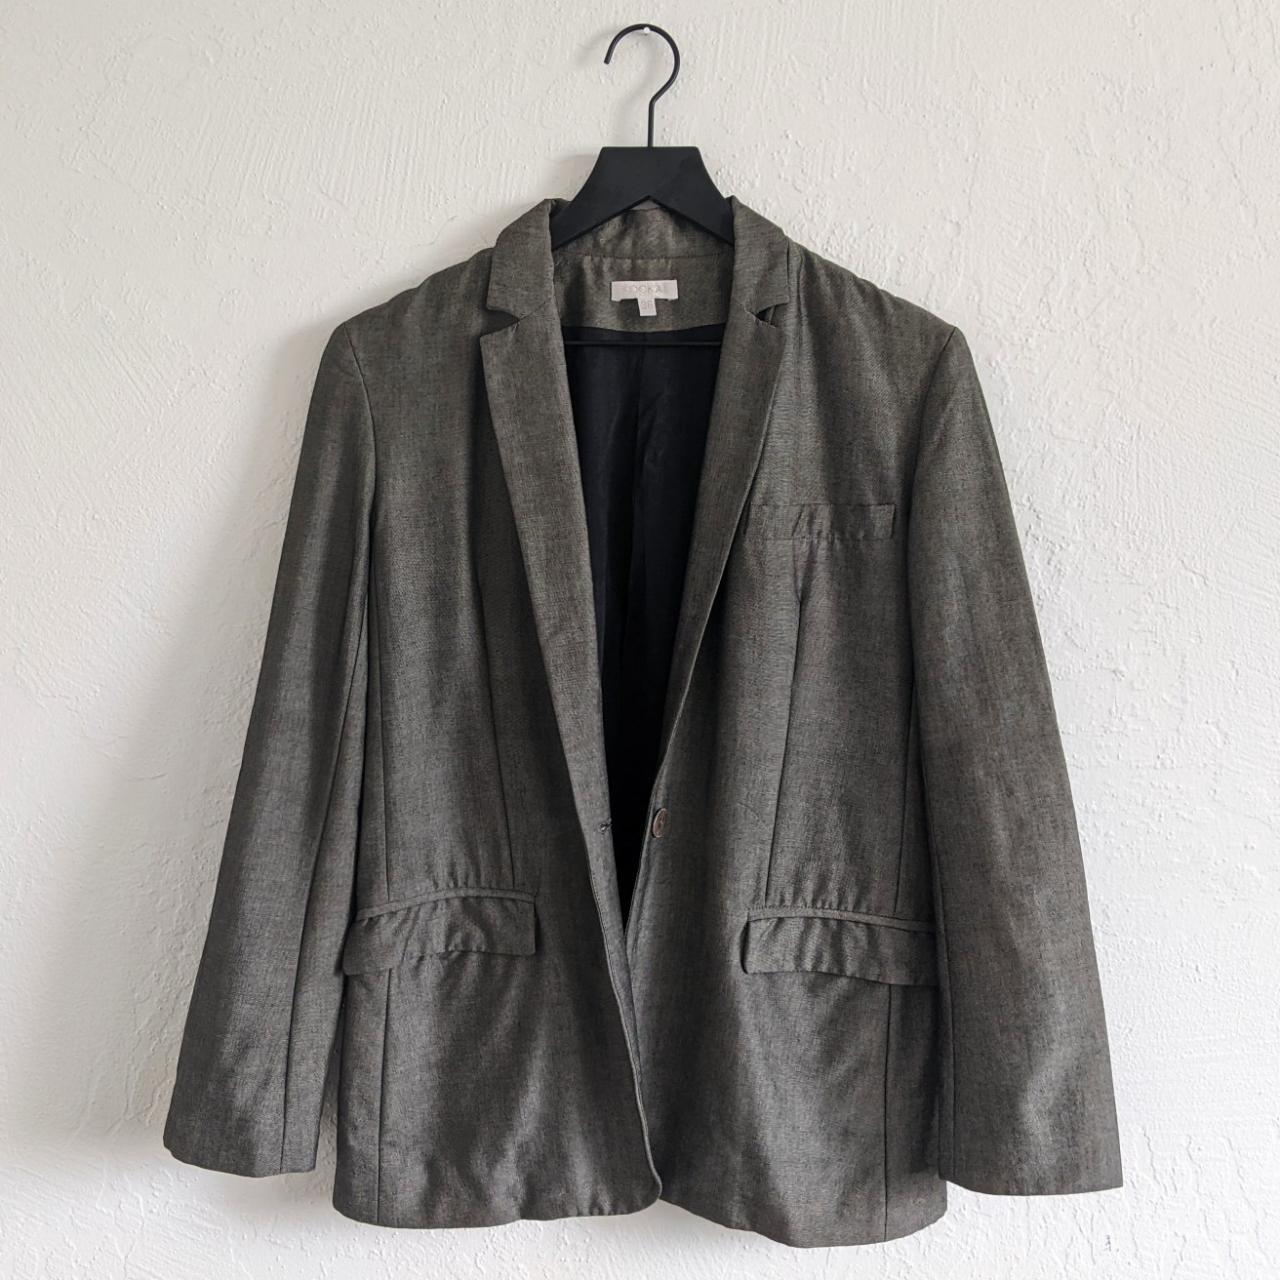 KOOKAÏ Women's Grey and Black Suit